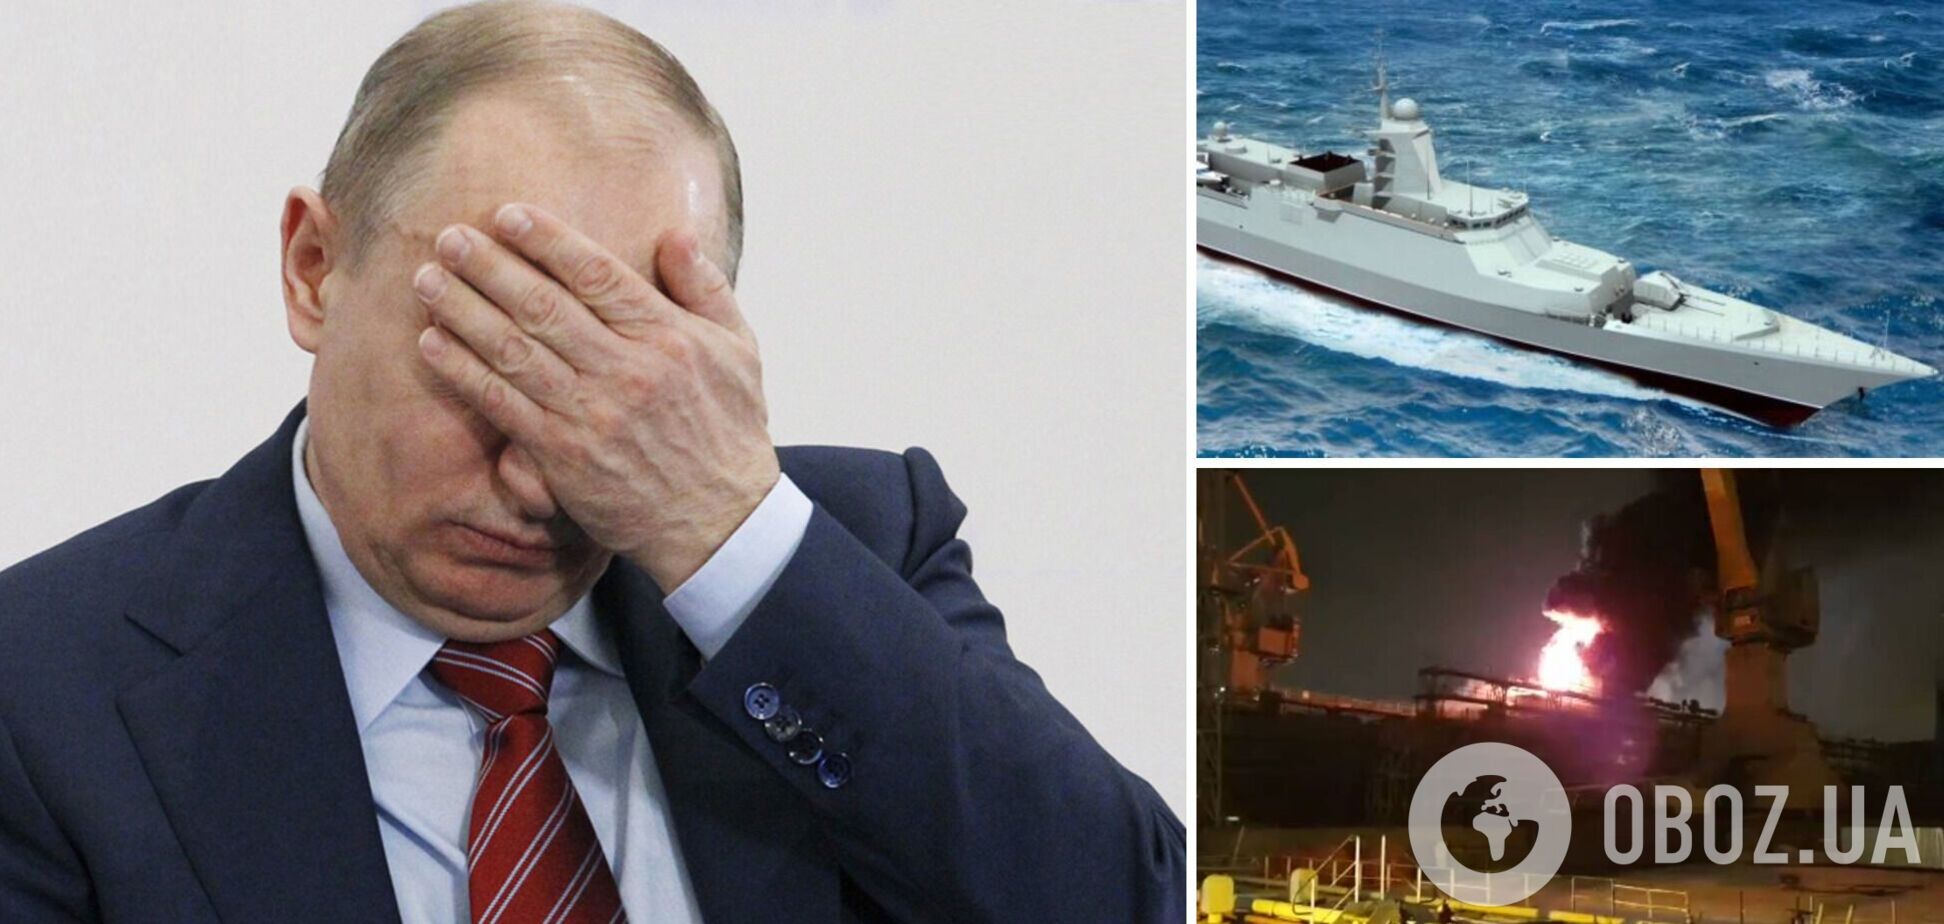 Пока мир обсуждает ультиматумы Путина-Лаврова, в Питере празднично догорает 'гроза НАТО'